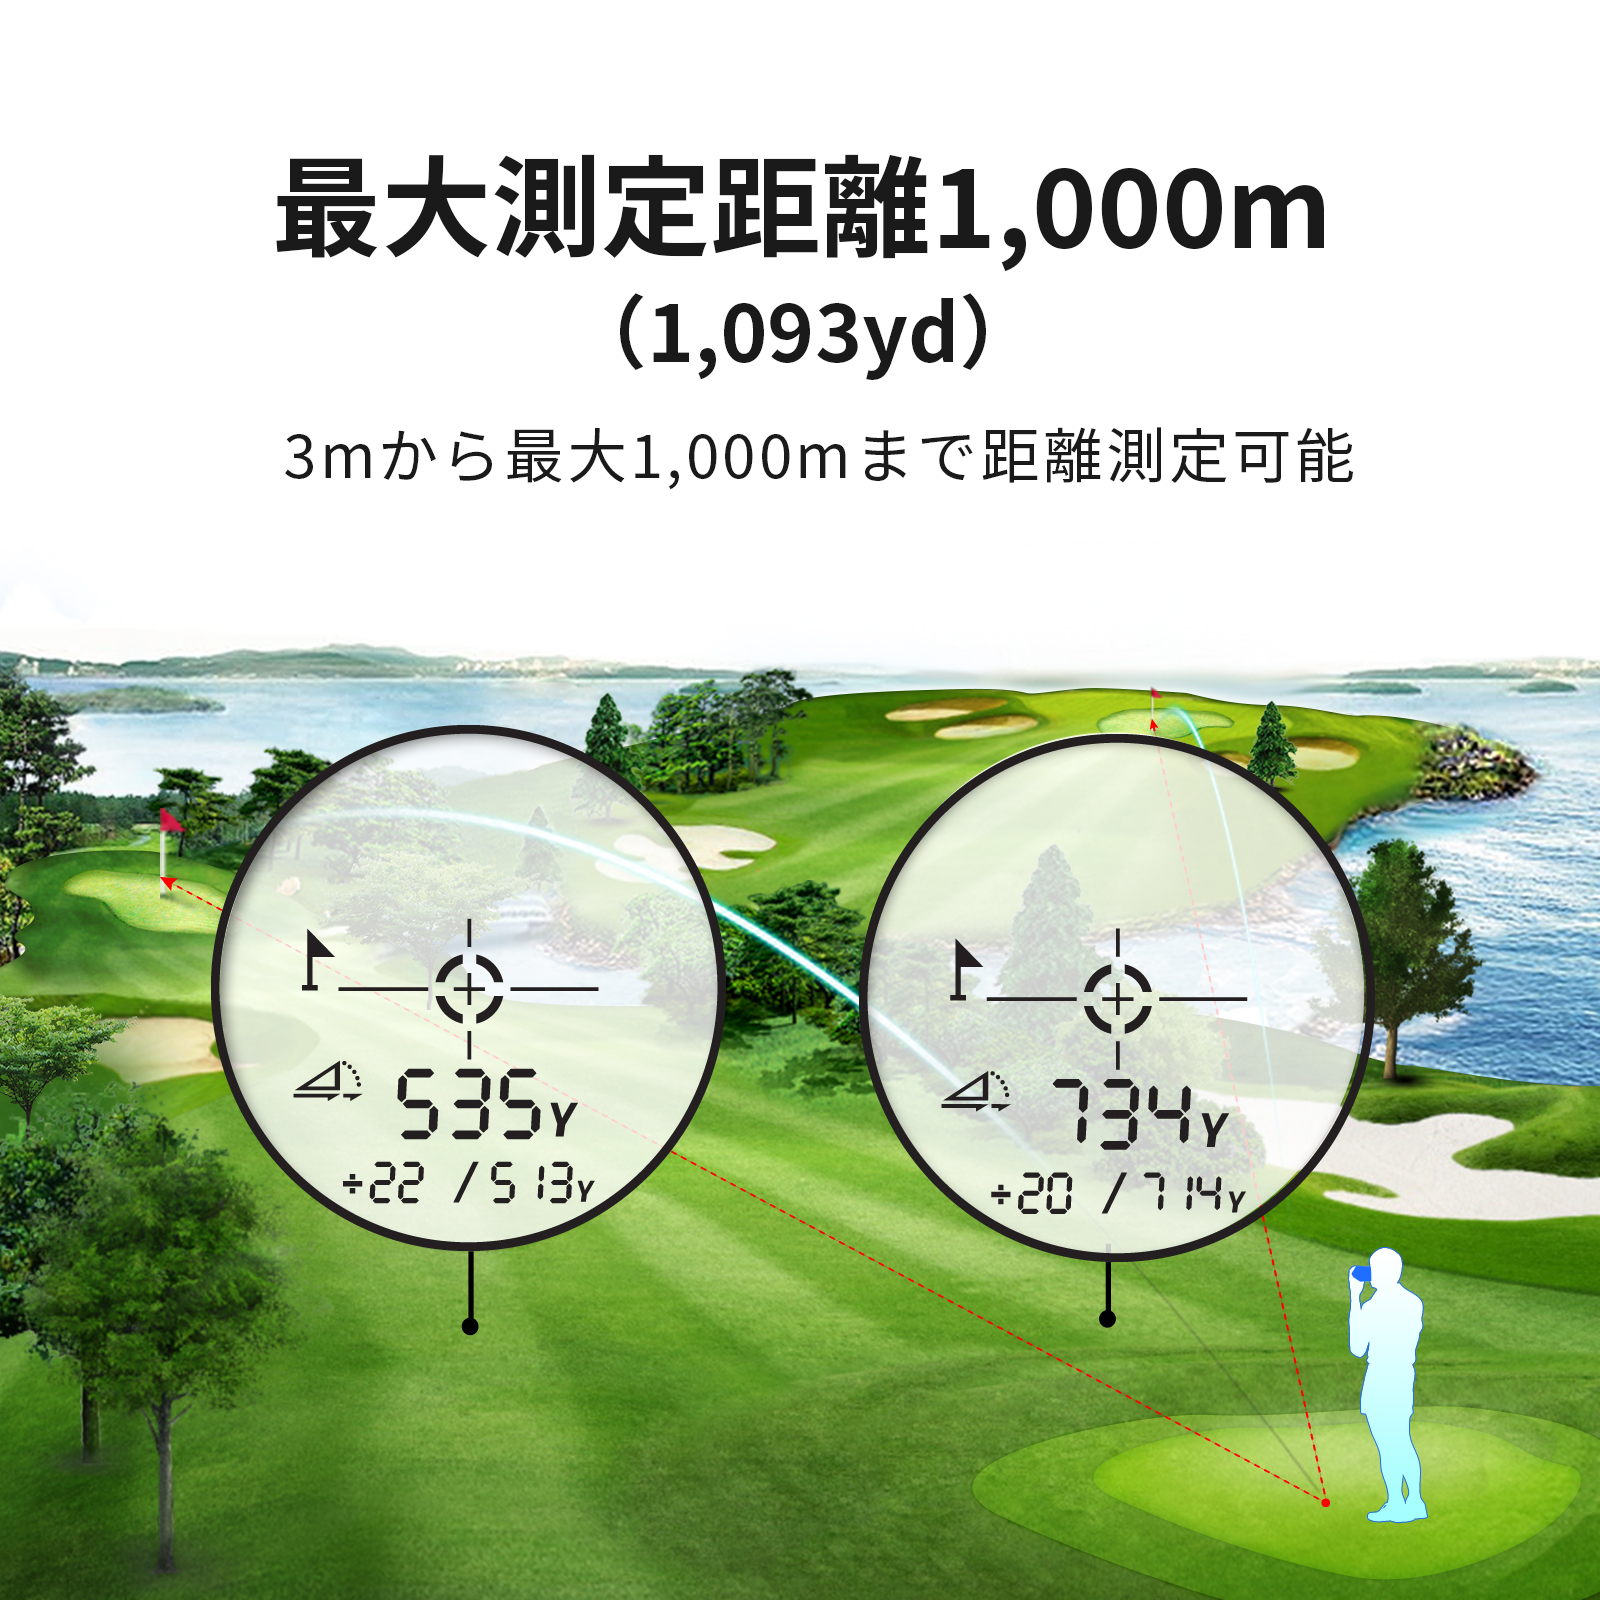 ゴルフレーザー距離計 ファインキャディ J300 測定速度0.1秒 1093yd